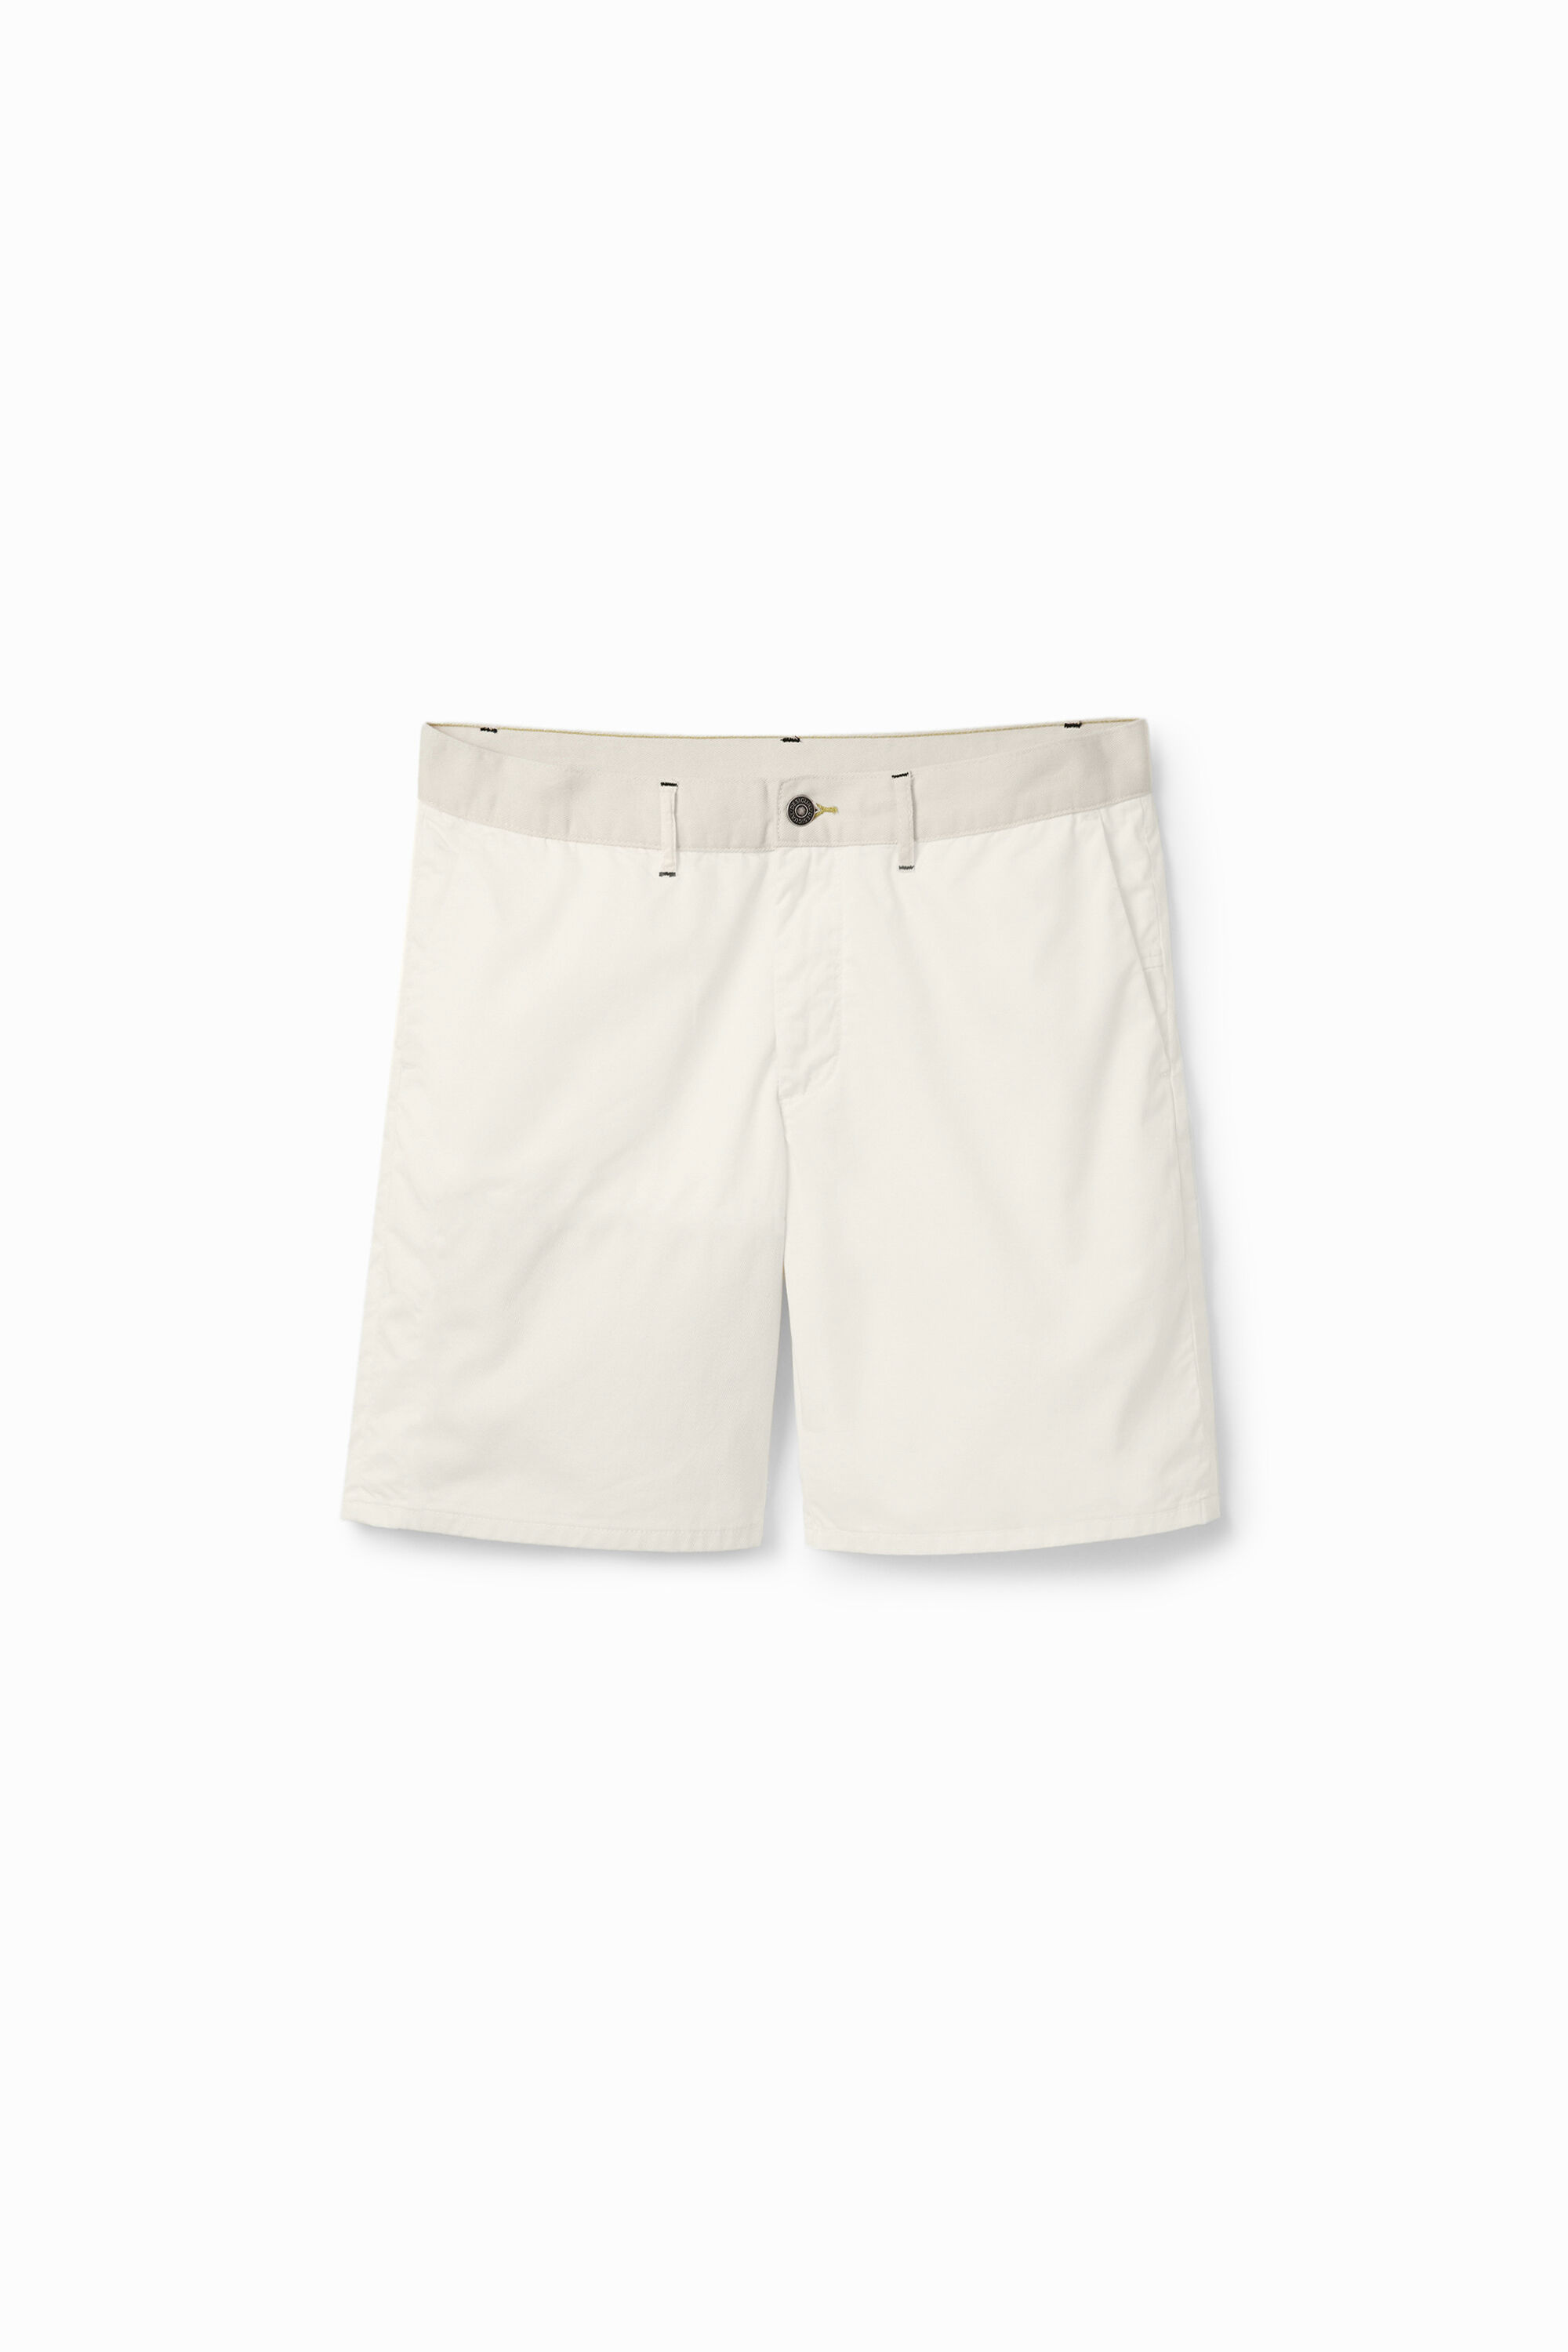 Hybrid shorts - WHITE - 34